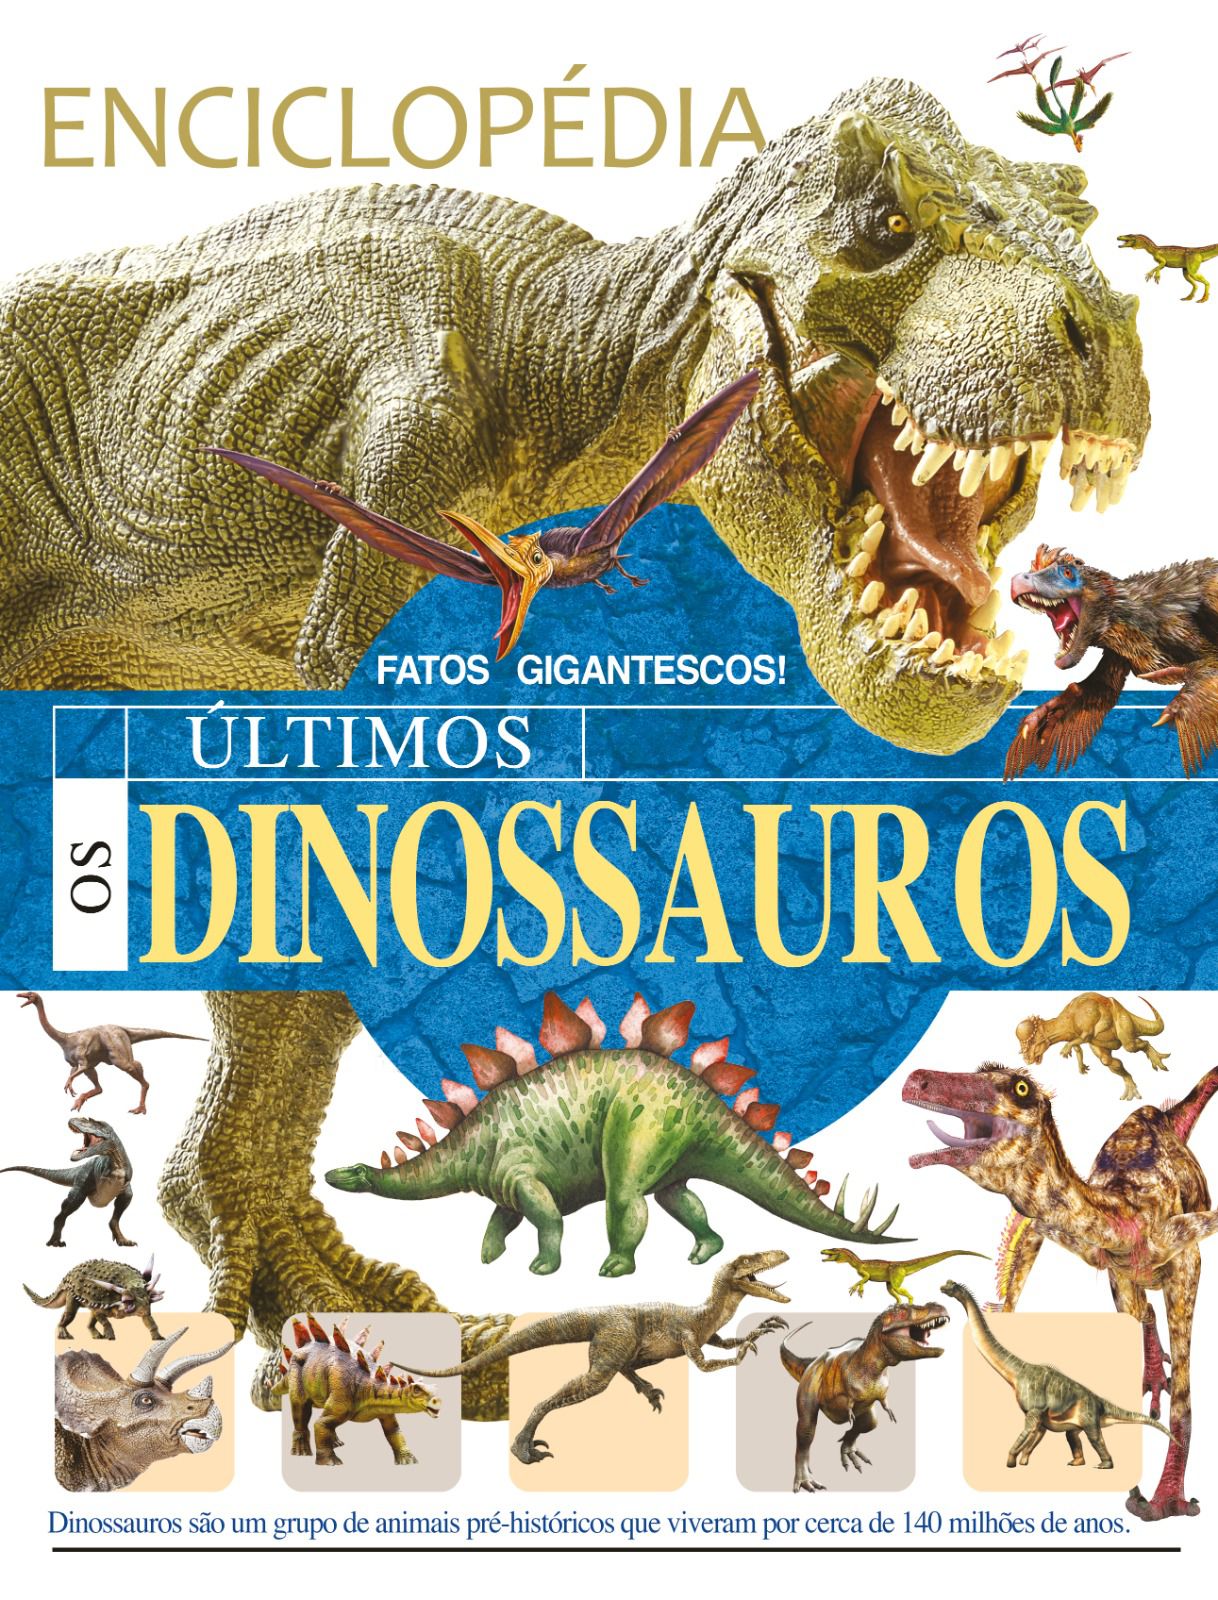 Dinosaurs – Wikipédia, a enciclopédia livre